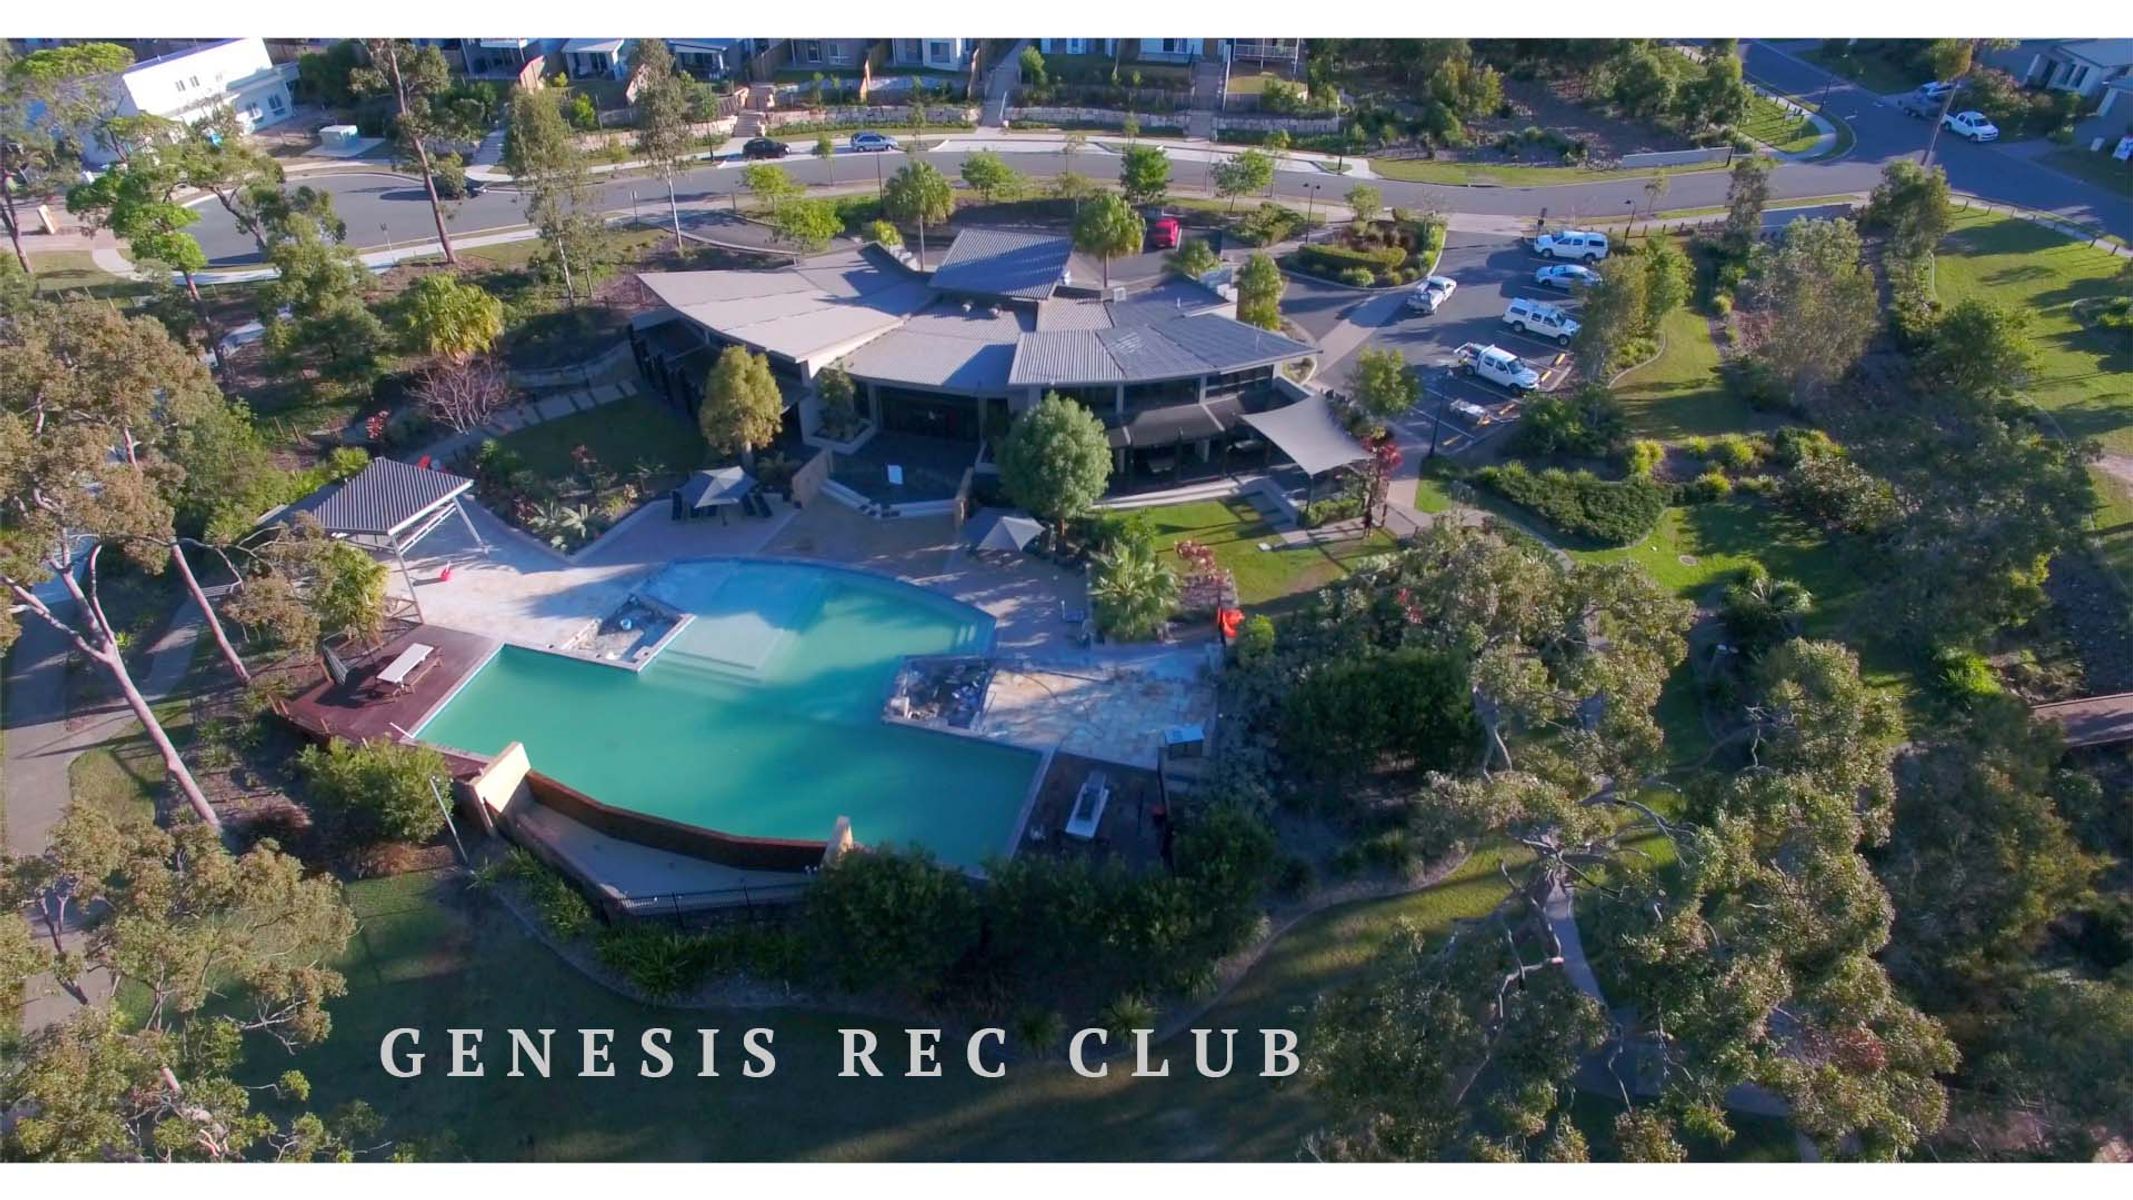 Genesis rec club TEXT